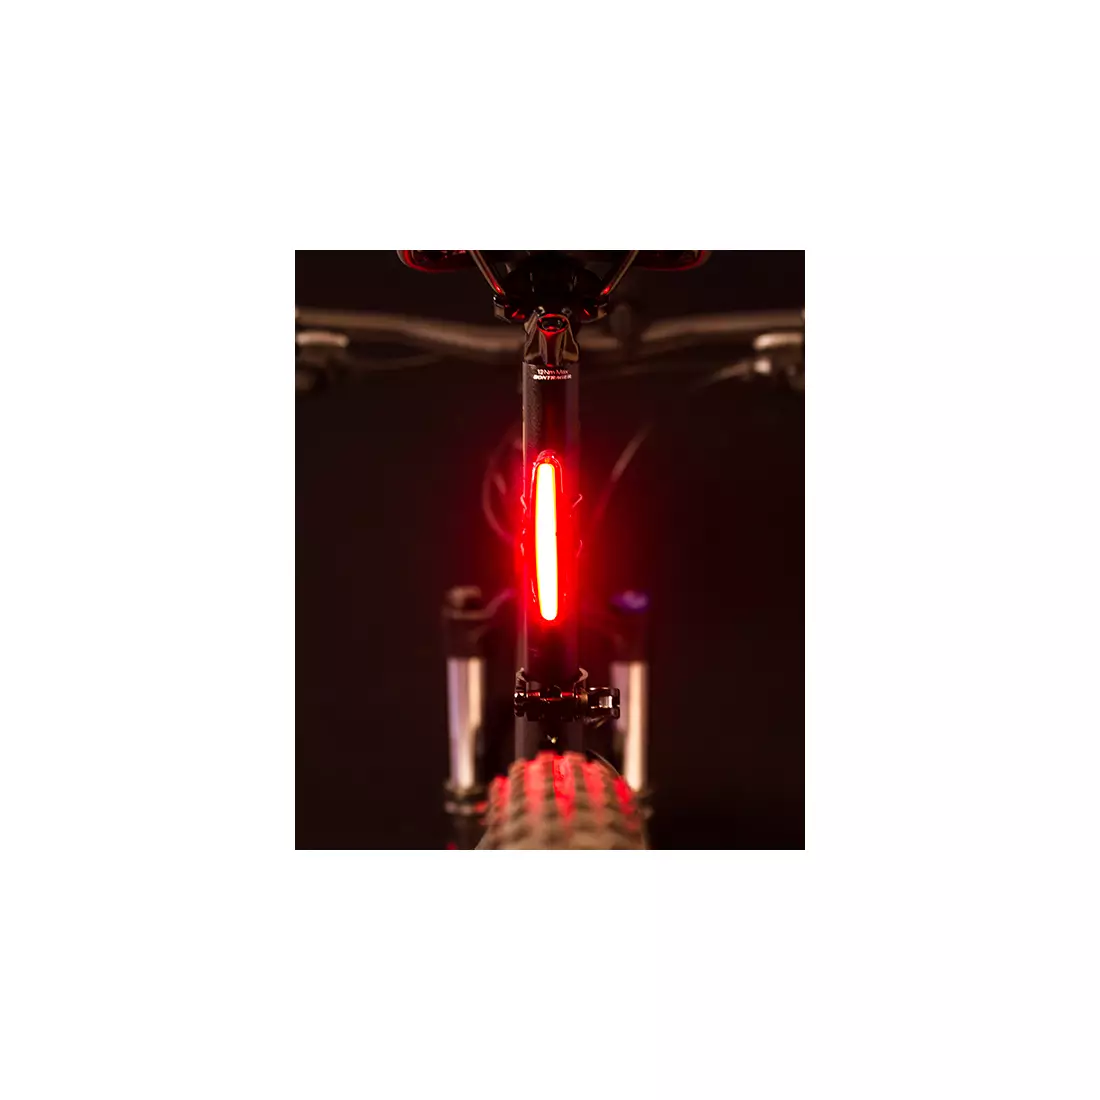 Zadní světlo SPANNINGA ARCO XB 30 lumeny USB (NEW) SNG-999175